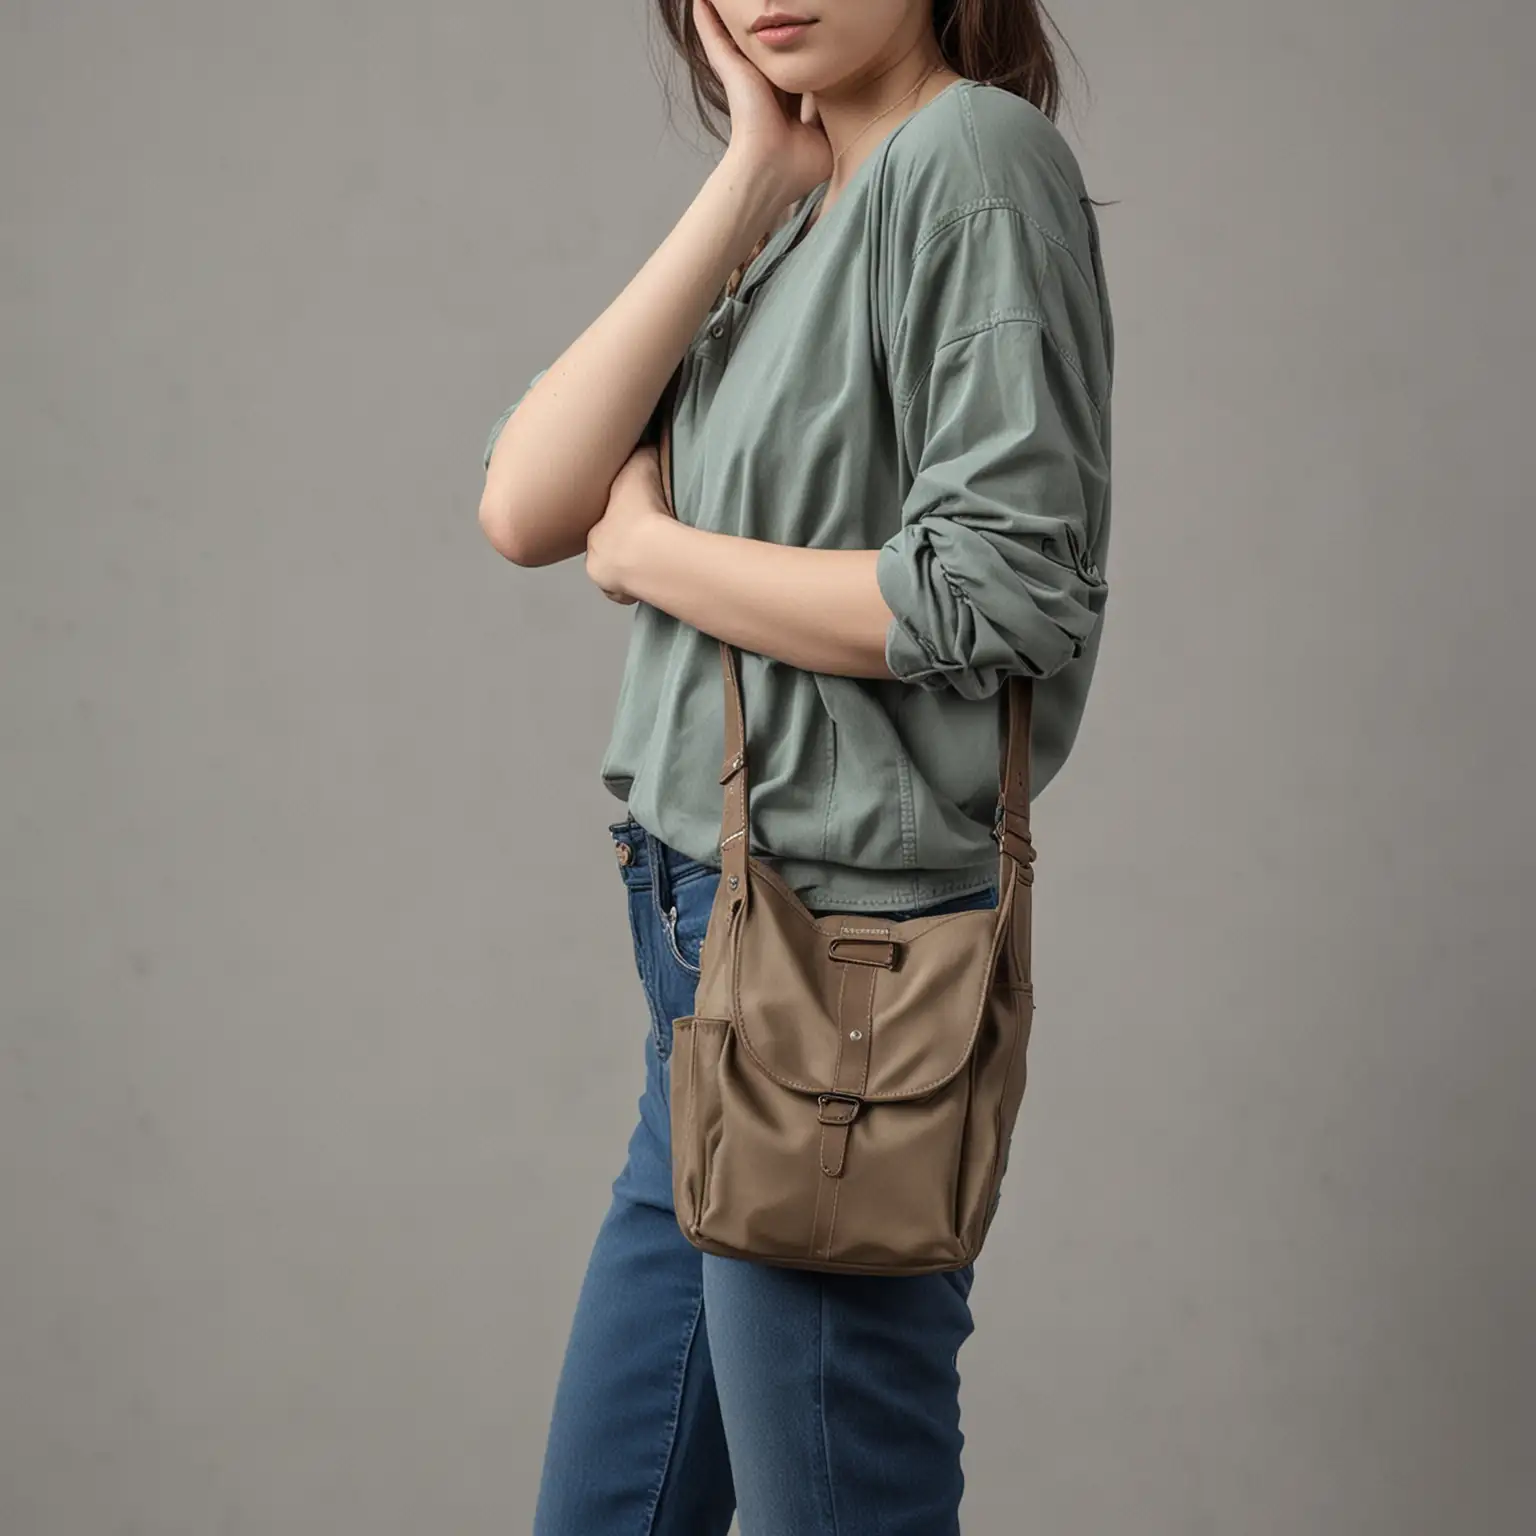 Stylish SingleShoulder Sling Bag with Modern Design